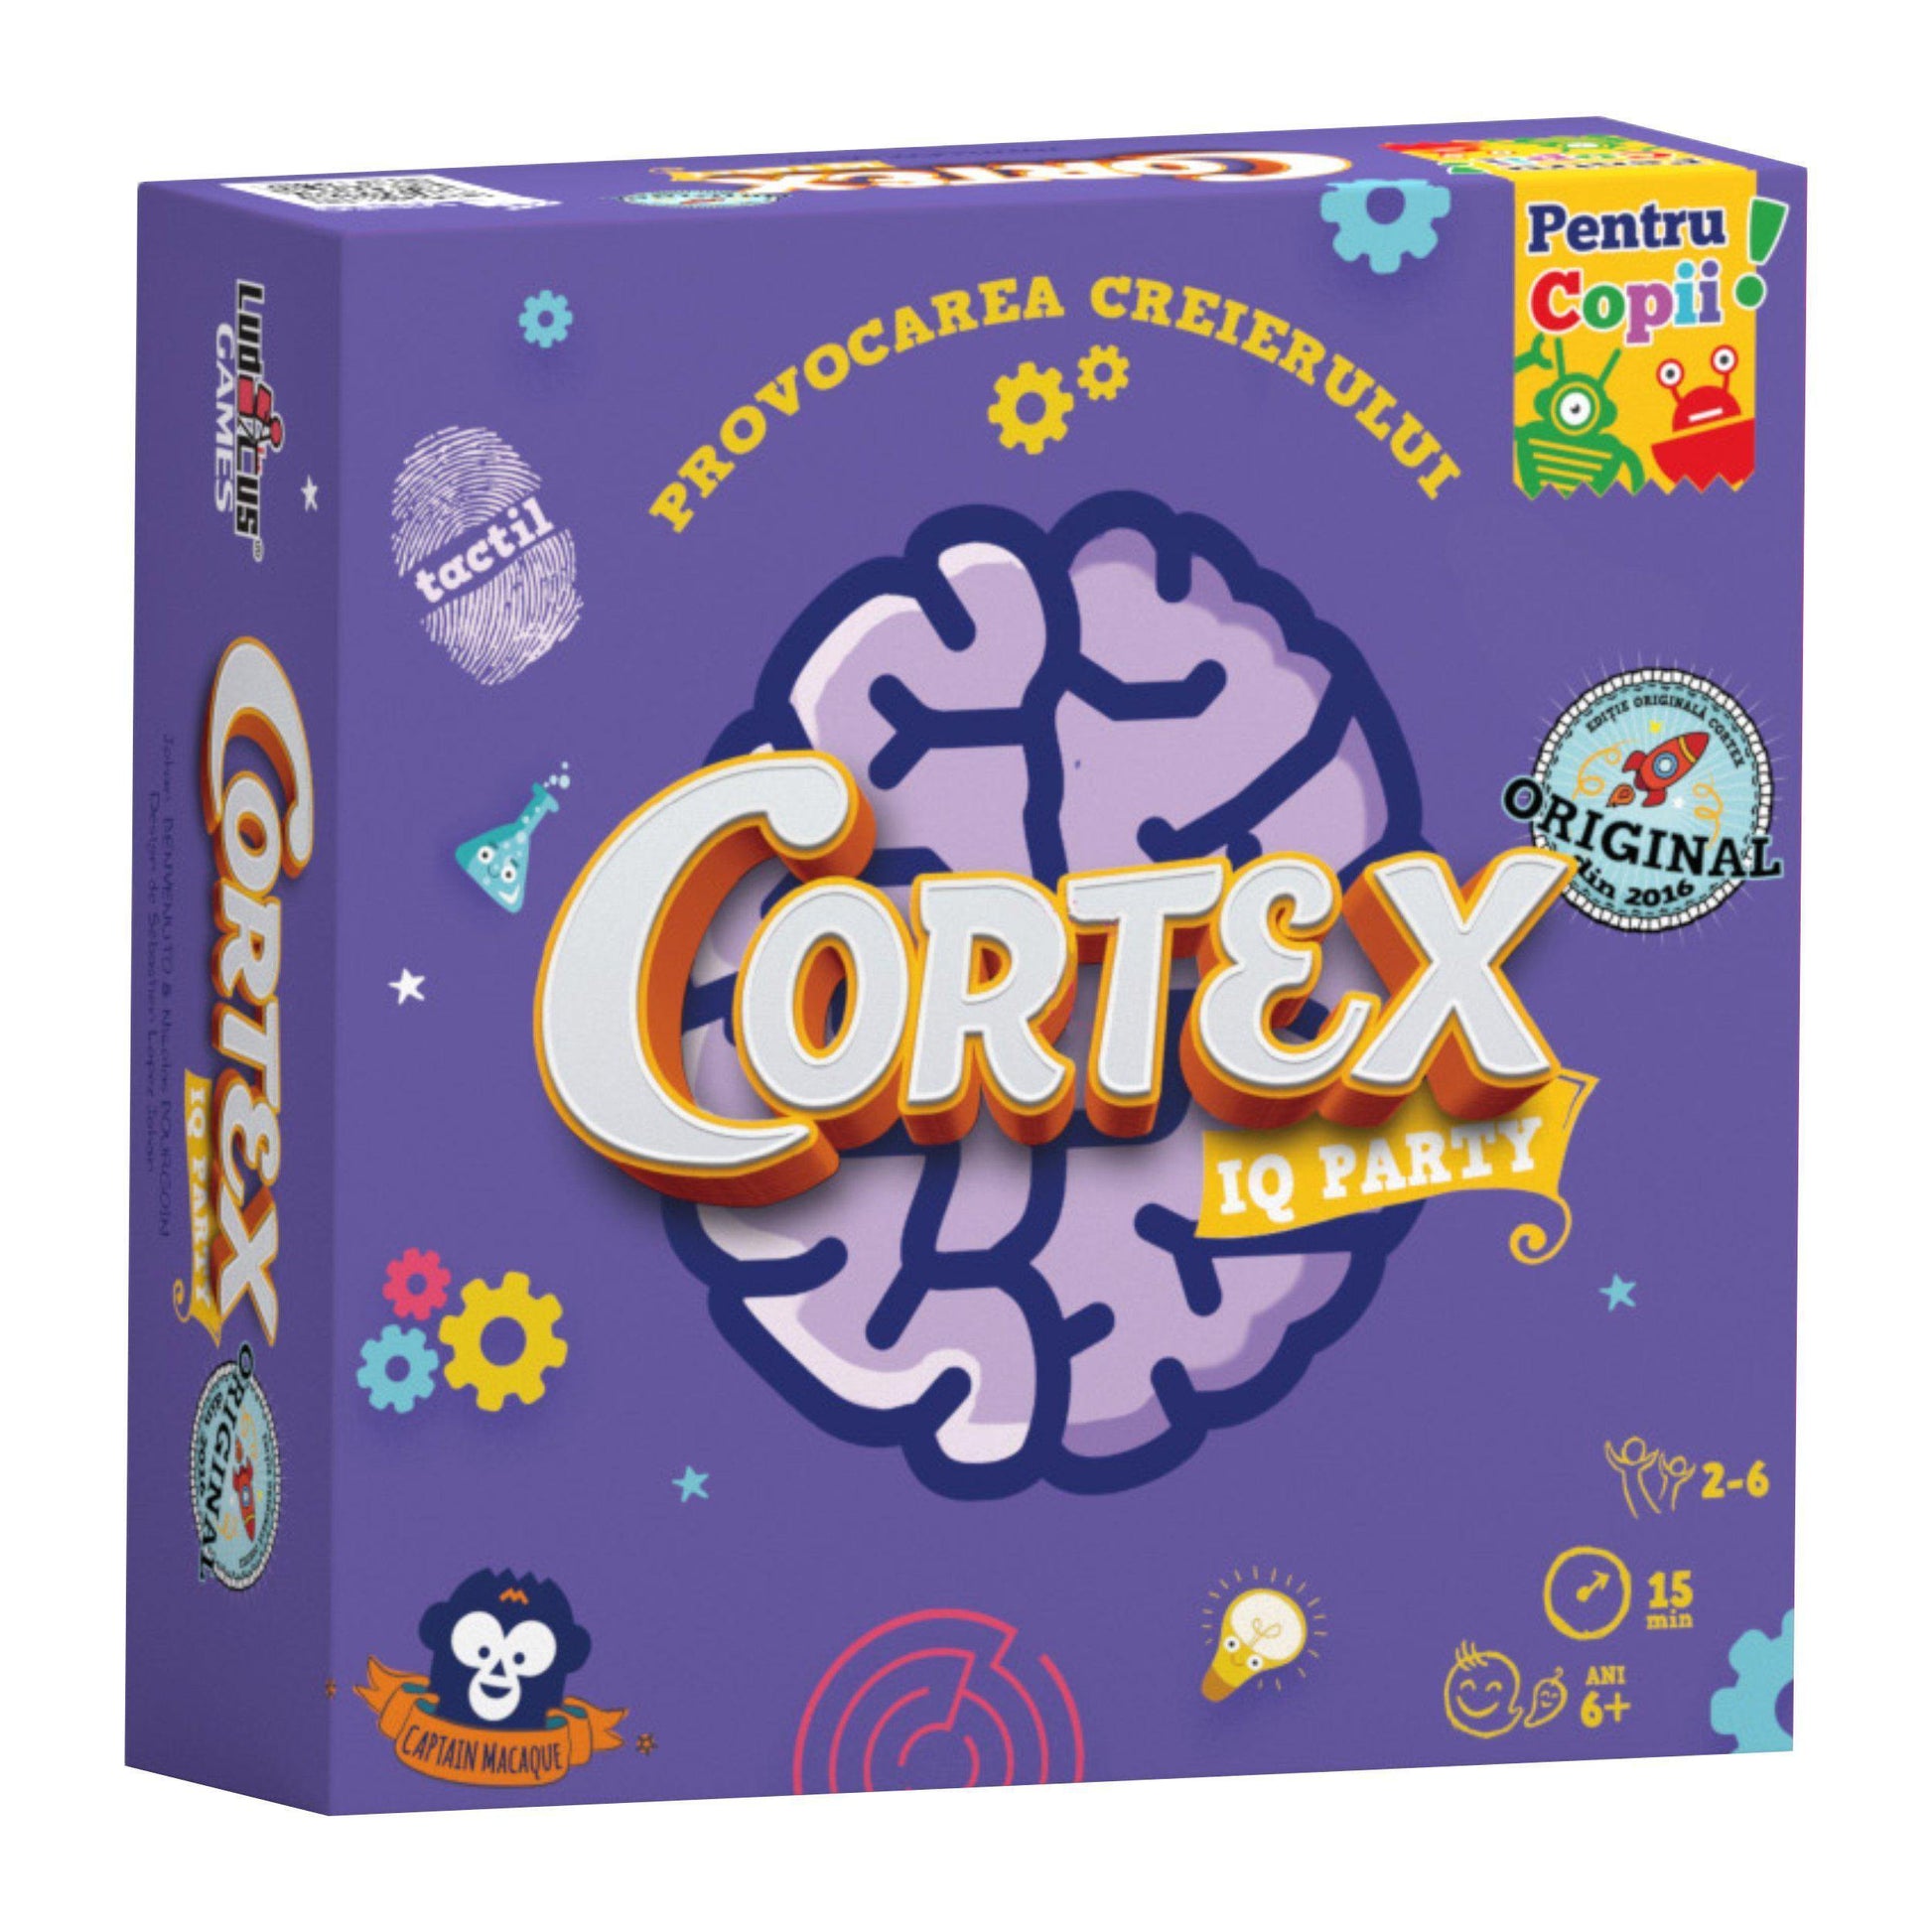 Cortex IQ Party Kids-Ludicus Games-1-Jocozaur